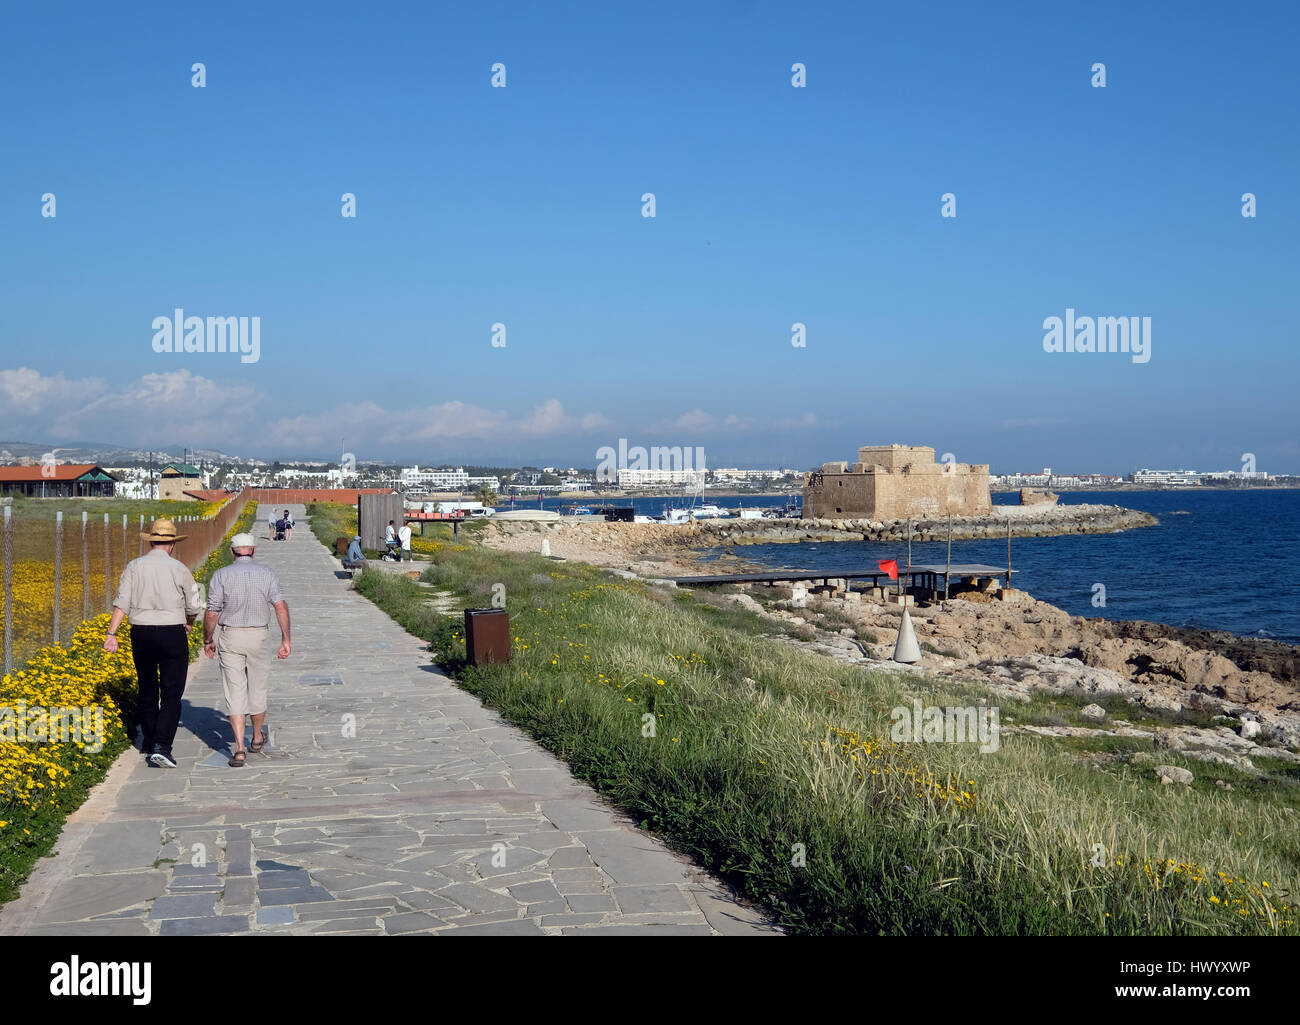 Un couple marche le long du sentier du littoral à Kato Paphos, Paphos, Chypre au printemps. Banque D'Images